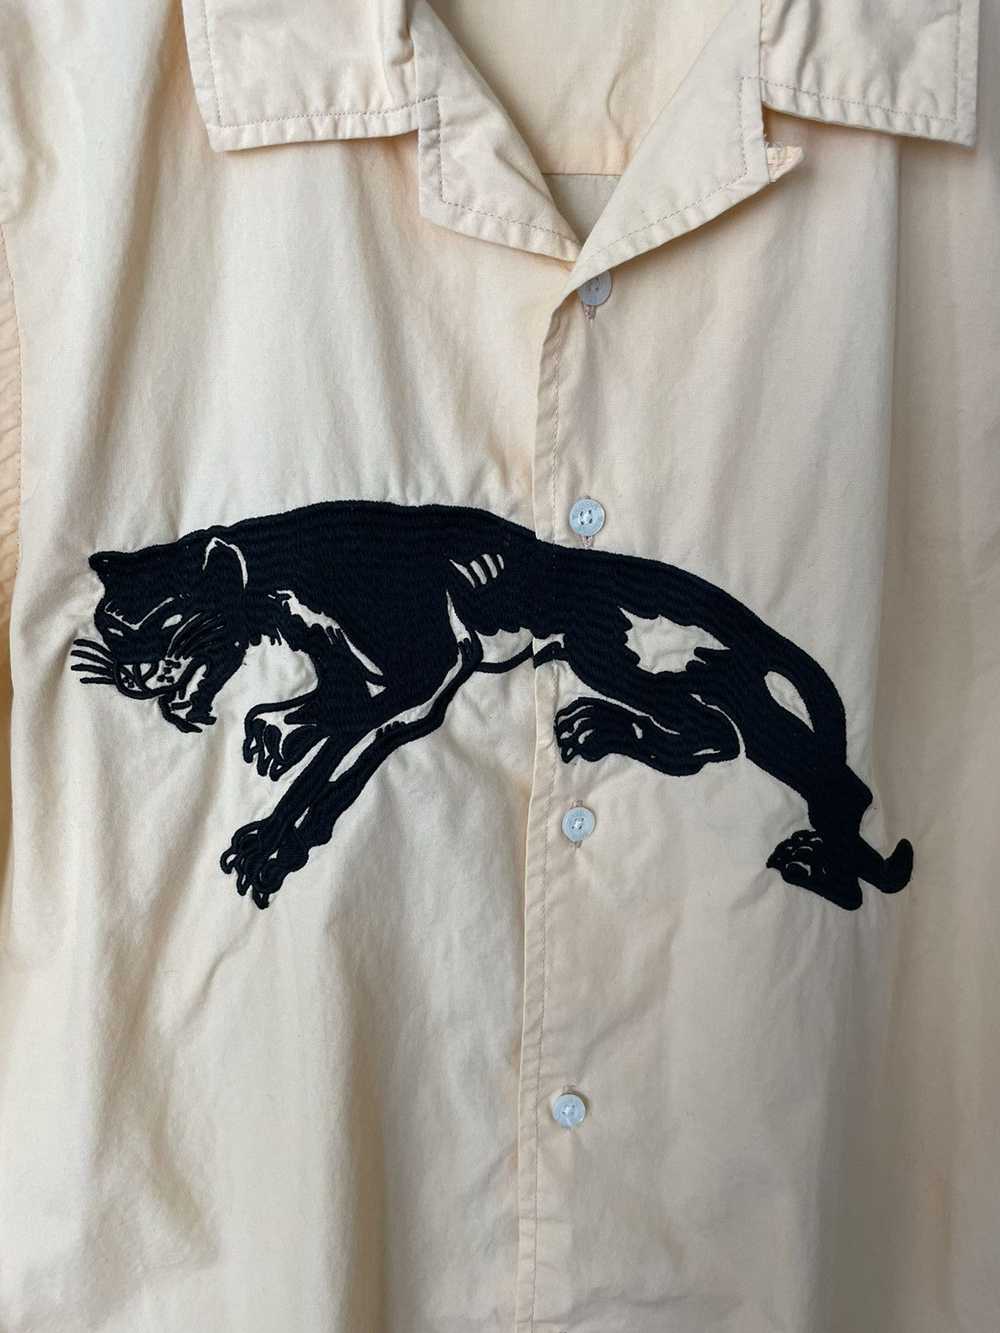 Stussy S/S18 Panther Camp Collar Shirt - image 3